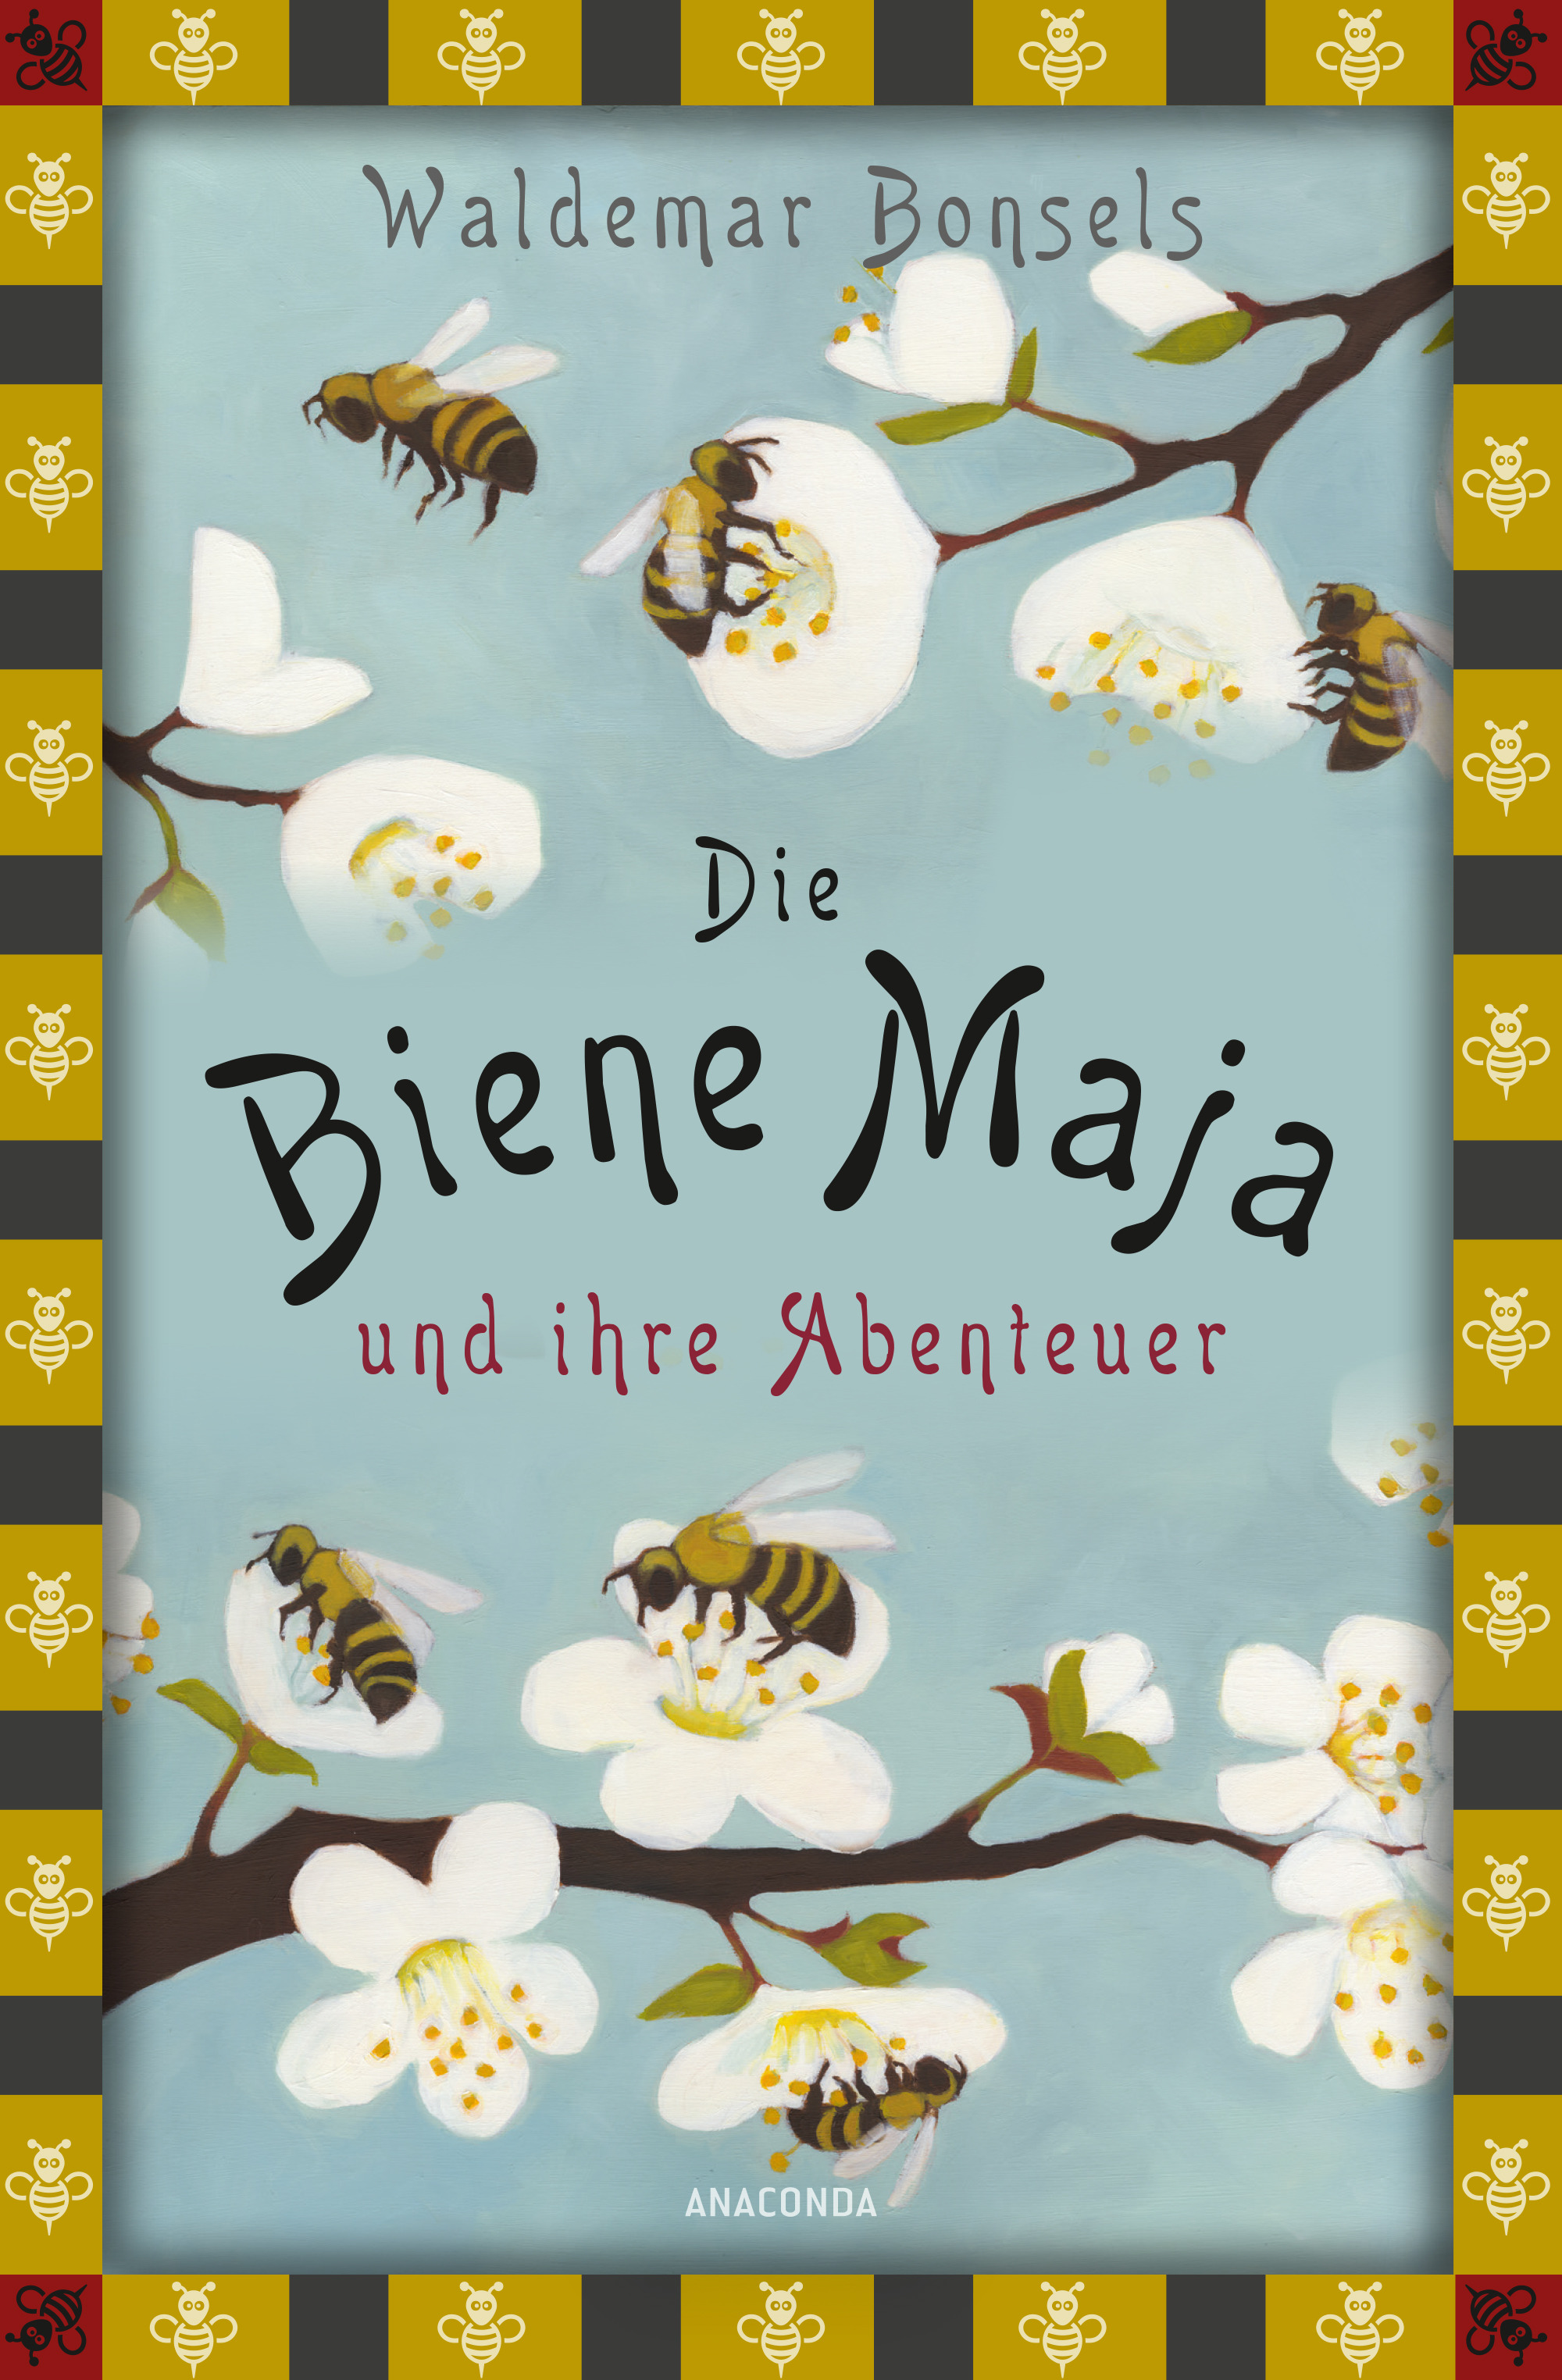 trunk Giotto Dibondon upright Waldemar Bonsels: Die Biene Maja und ihre Abenteuer - Buch - Anaconda Verlag